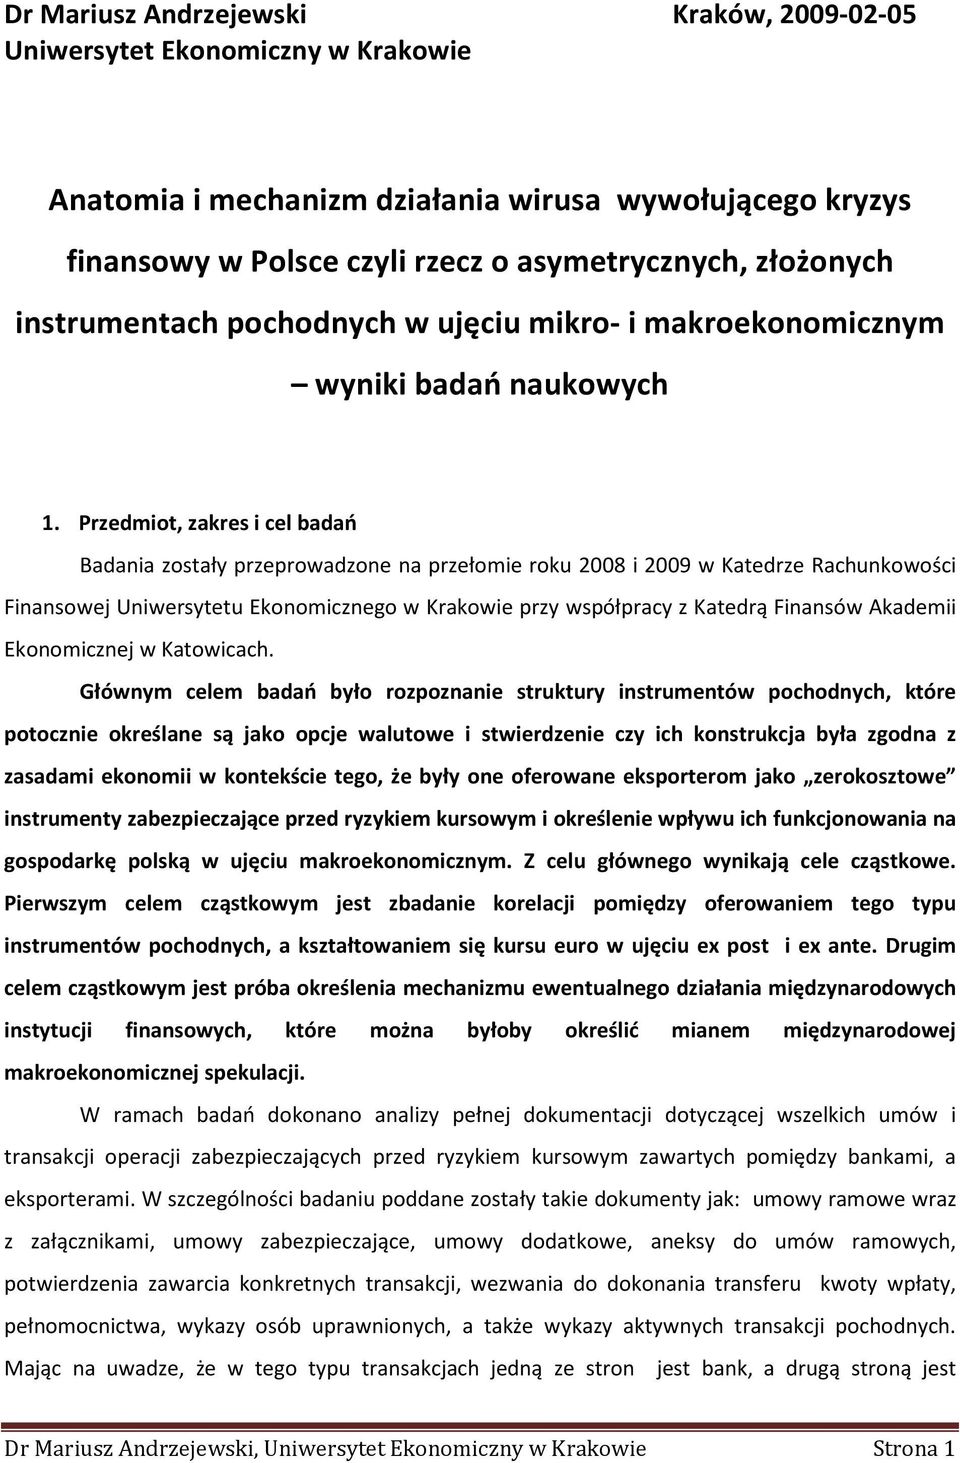 Przedmiot, zakres i cel badań Badania zostały przeprowadzone na przełomie roku 2008 i 2009 w Katedrze Rachunkowości Finansowej Uniwersytetu Ekonomicznego w Krakowie przy współpracy z Katedrą Finansów